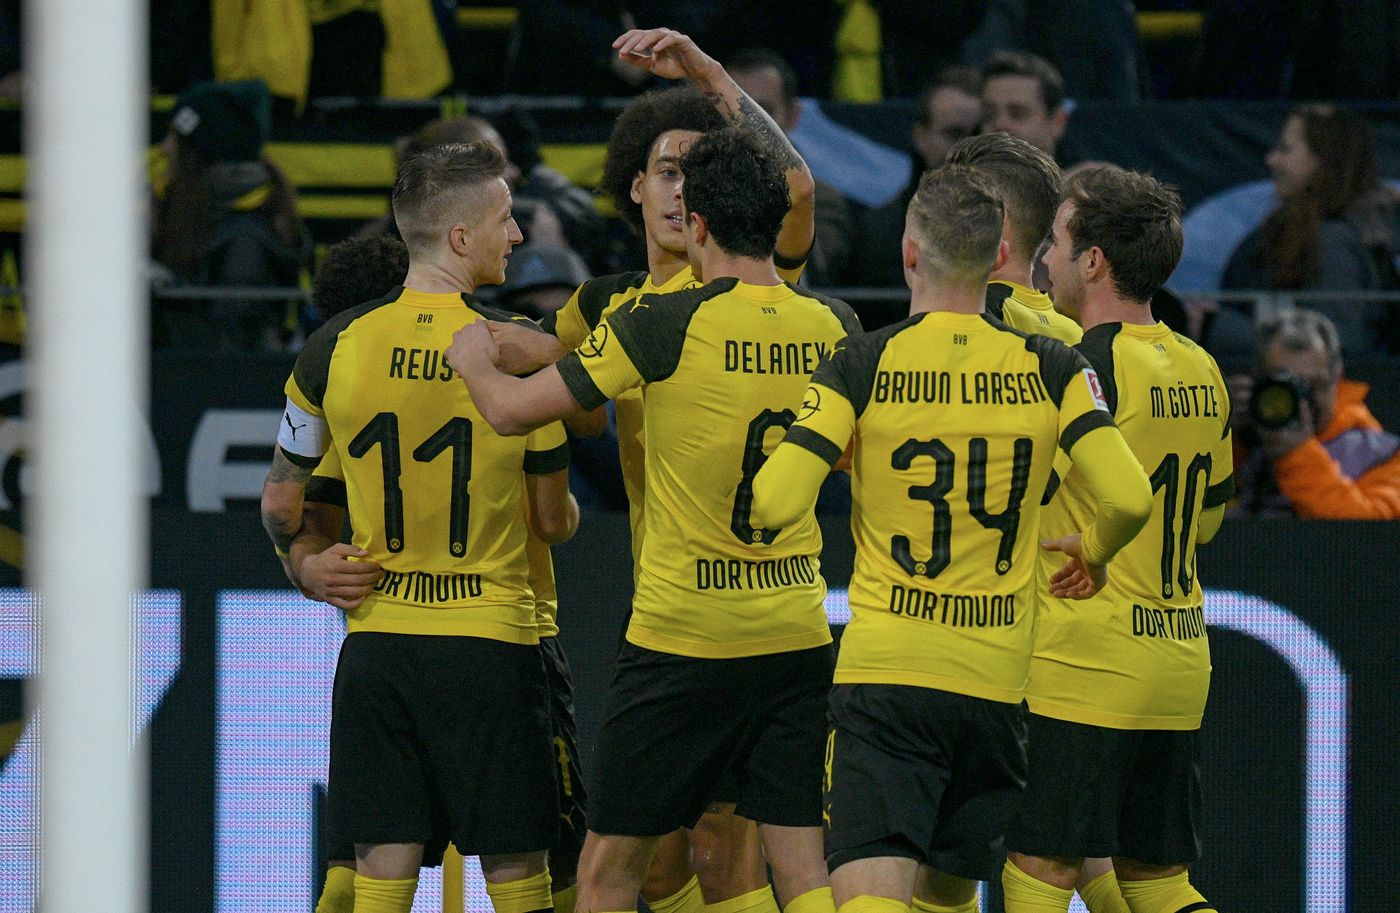 Bundesliga, Brema-Dortmund 4 maggio: analisi e pronostico della giornata della massima divisione calcistica tedesca